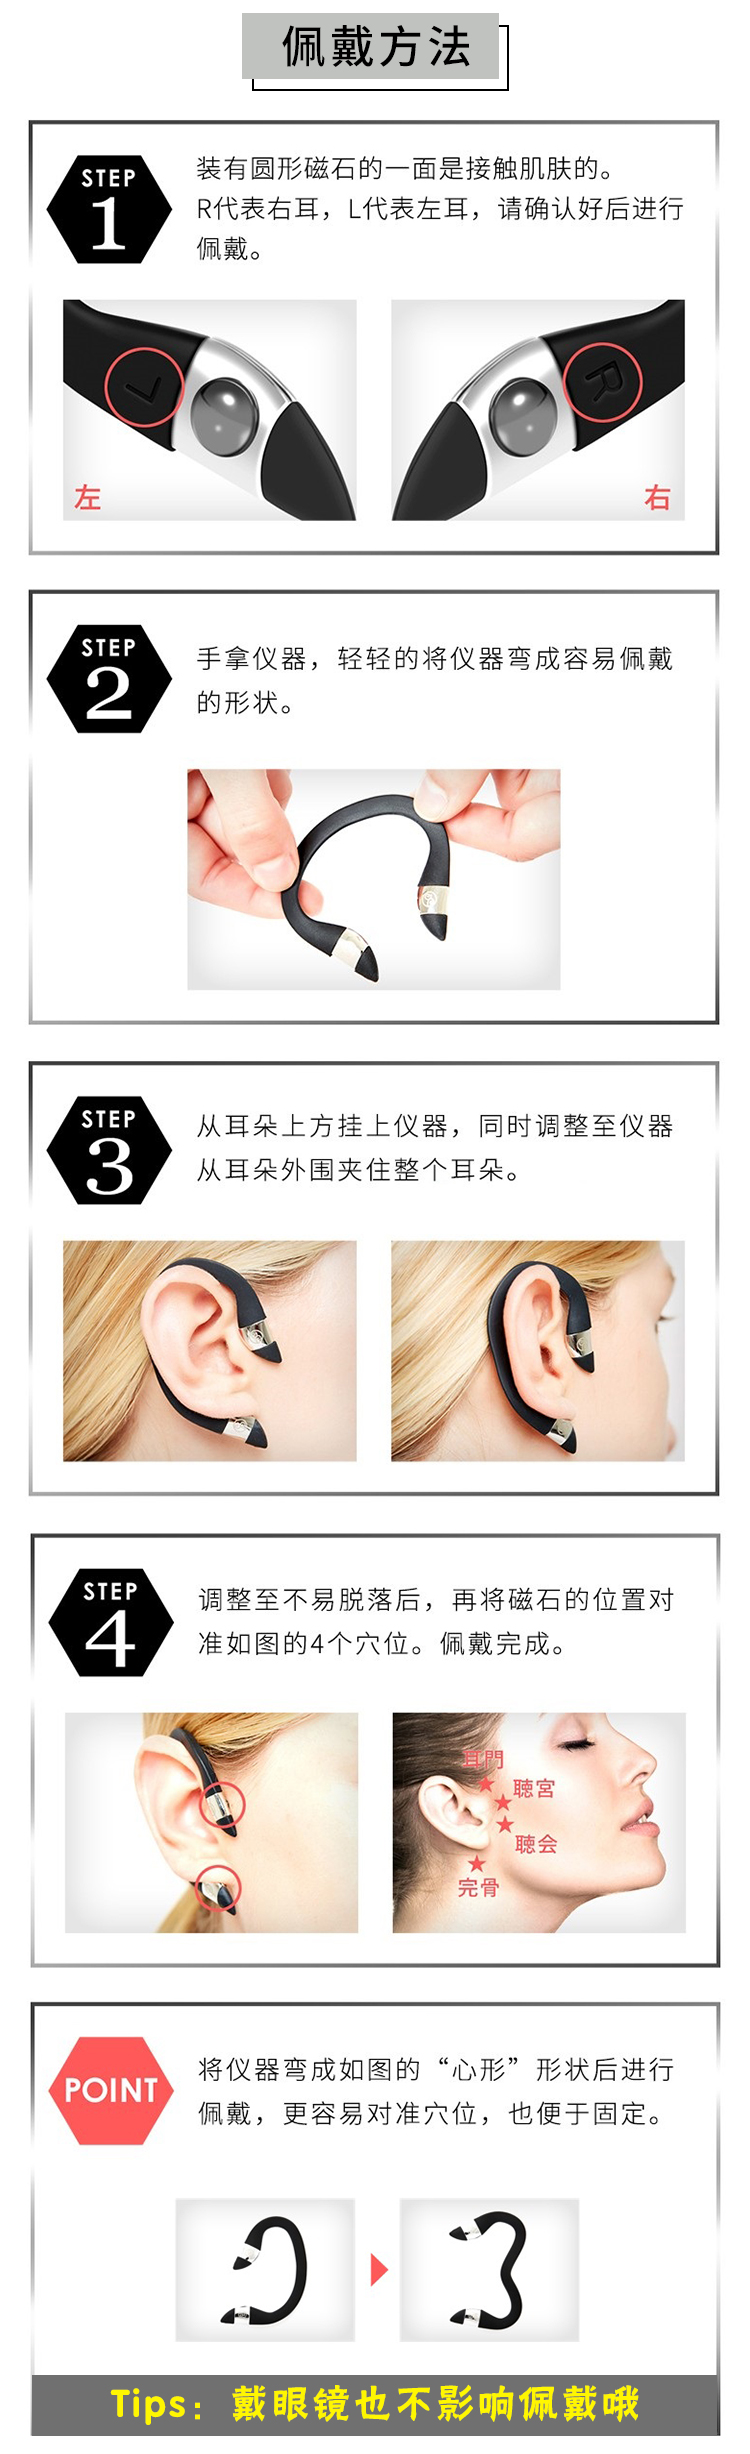 日本earup磁石瘦脸耳环怎么代理？